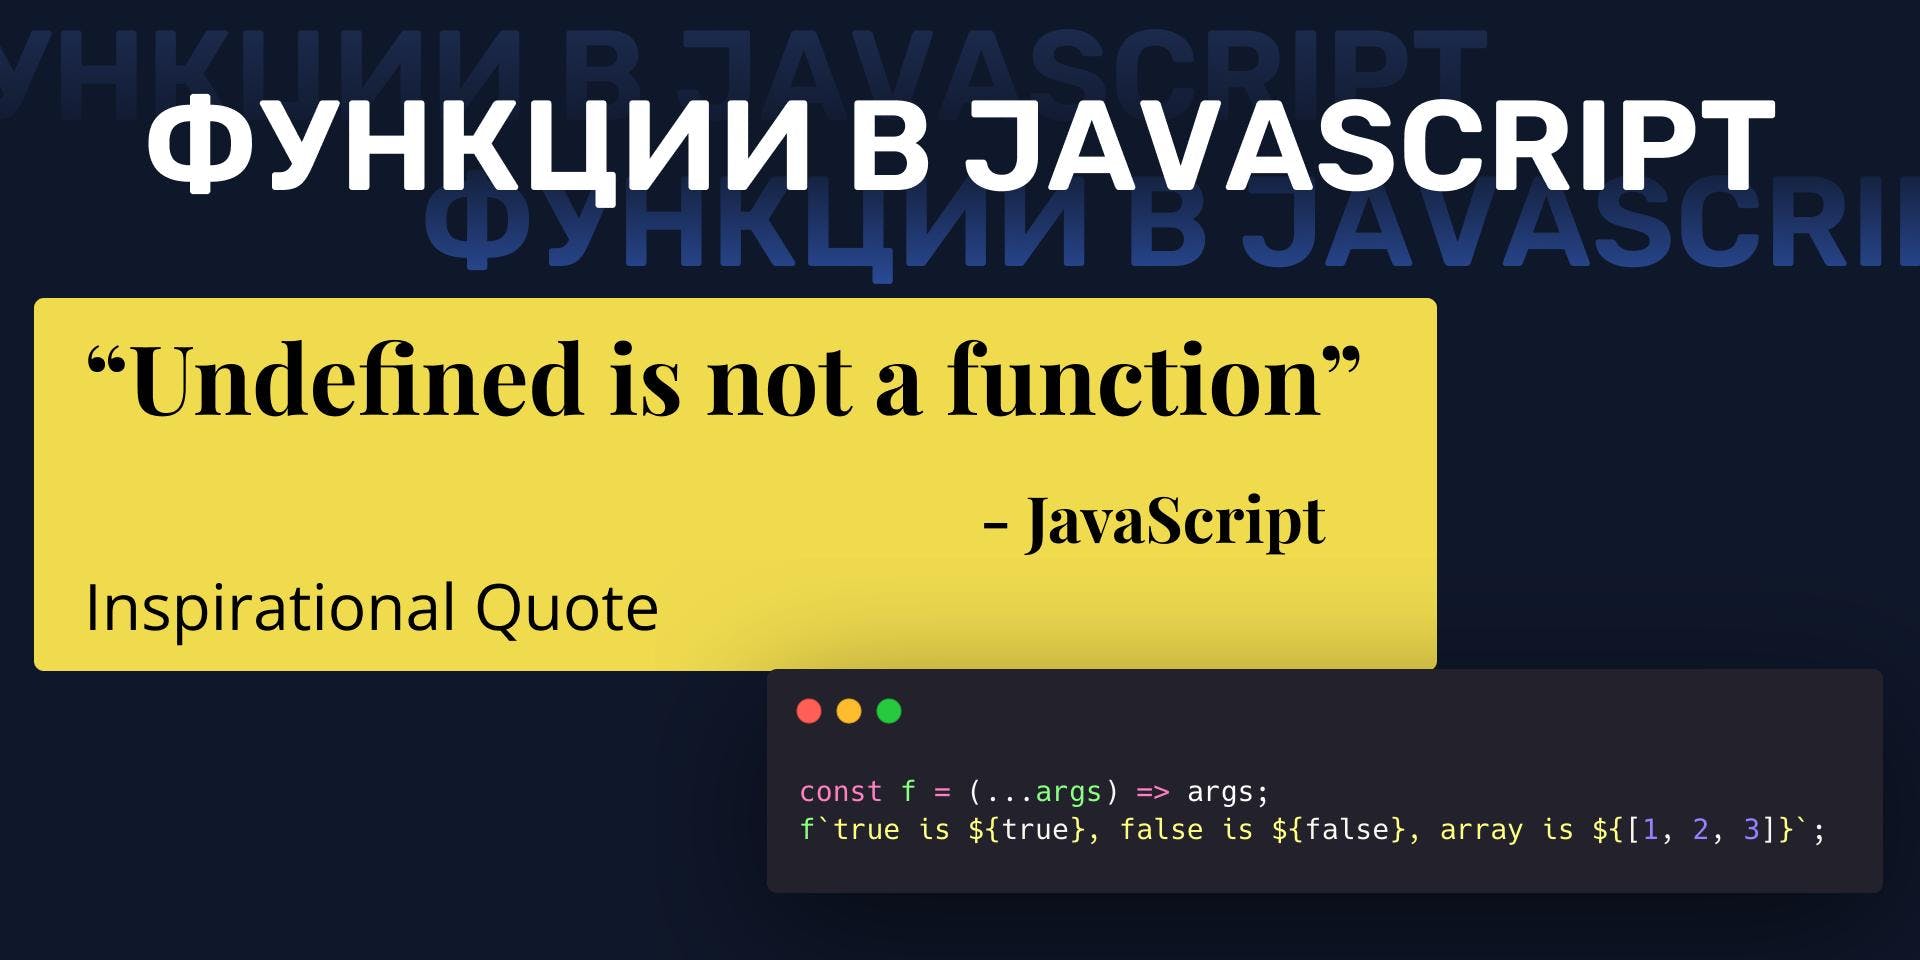 Cover Image for Функции в JavaScript